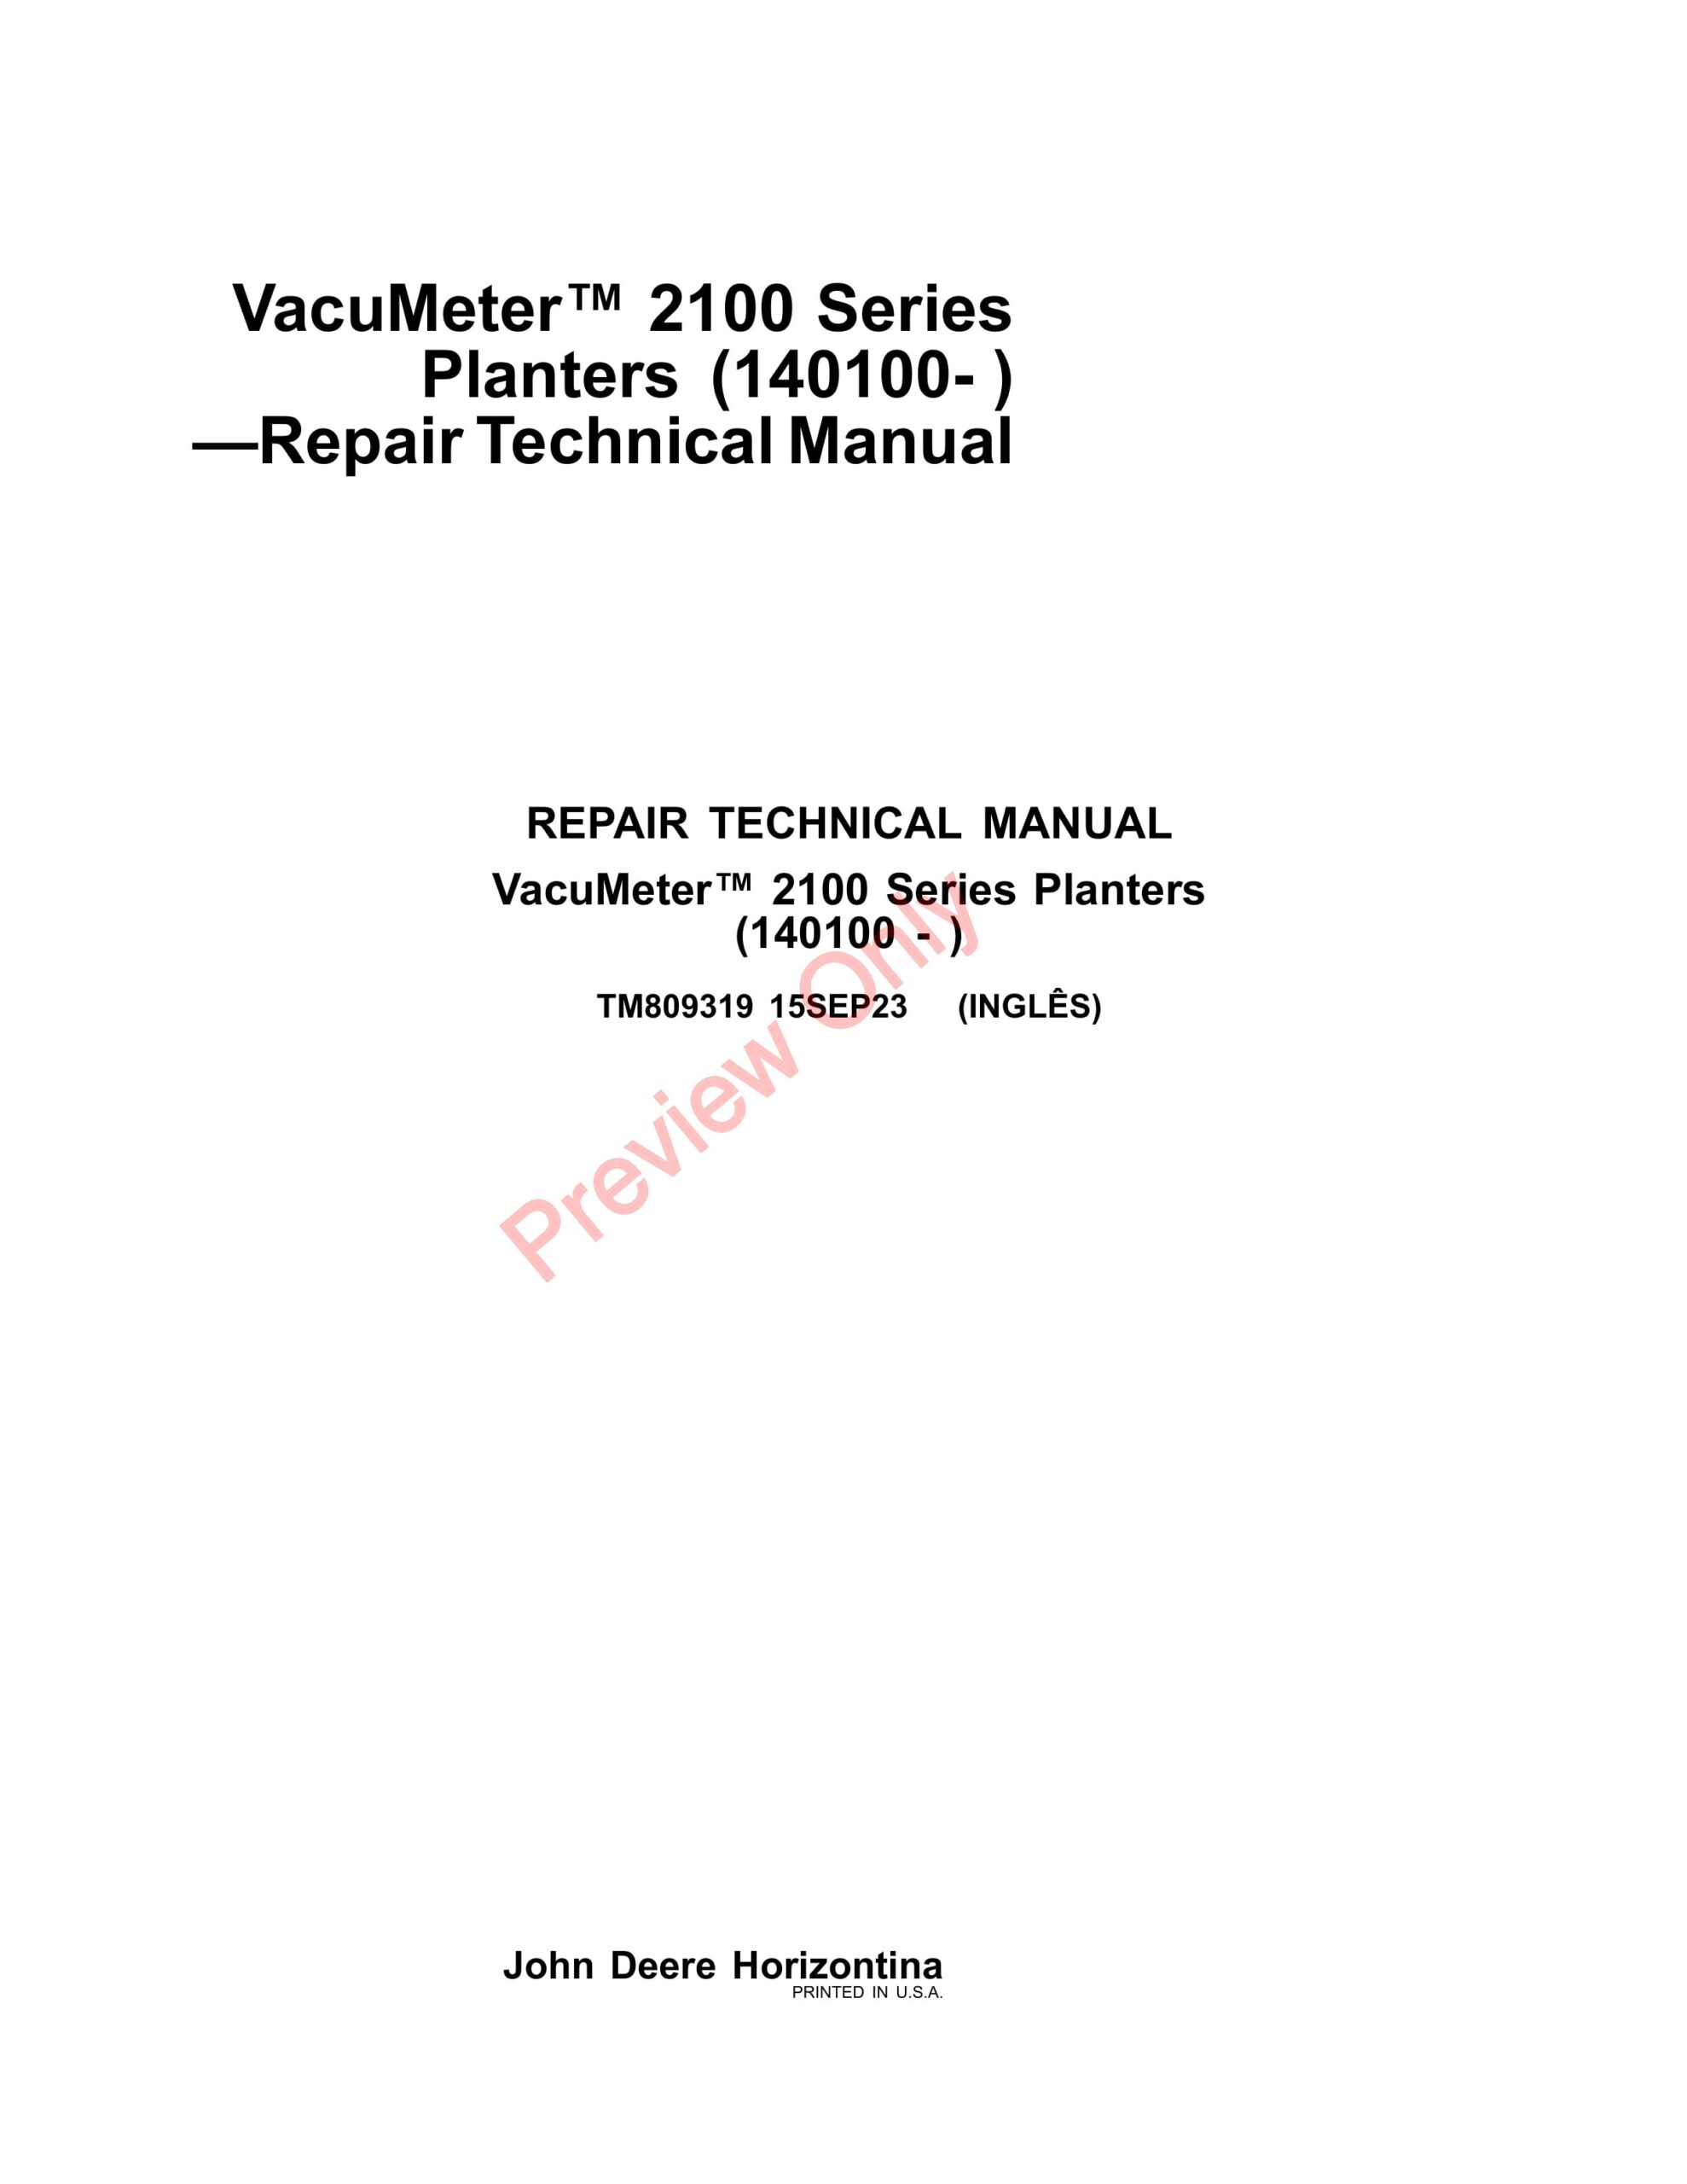 John Deere VacuMeter 2100 Series Planters (140100 -) Repair Technical Manual TM809319 15SEP23-1